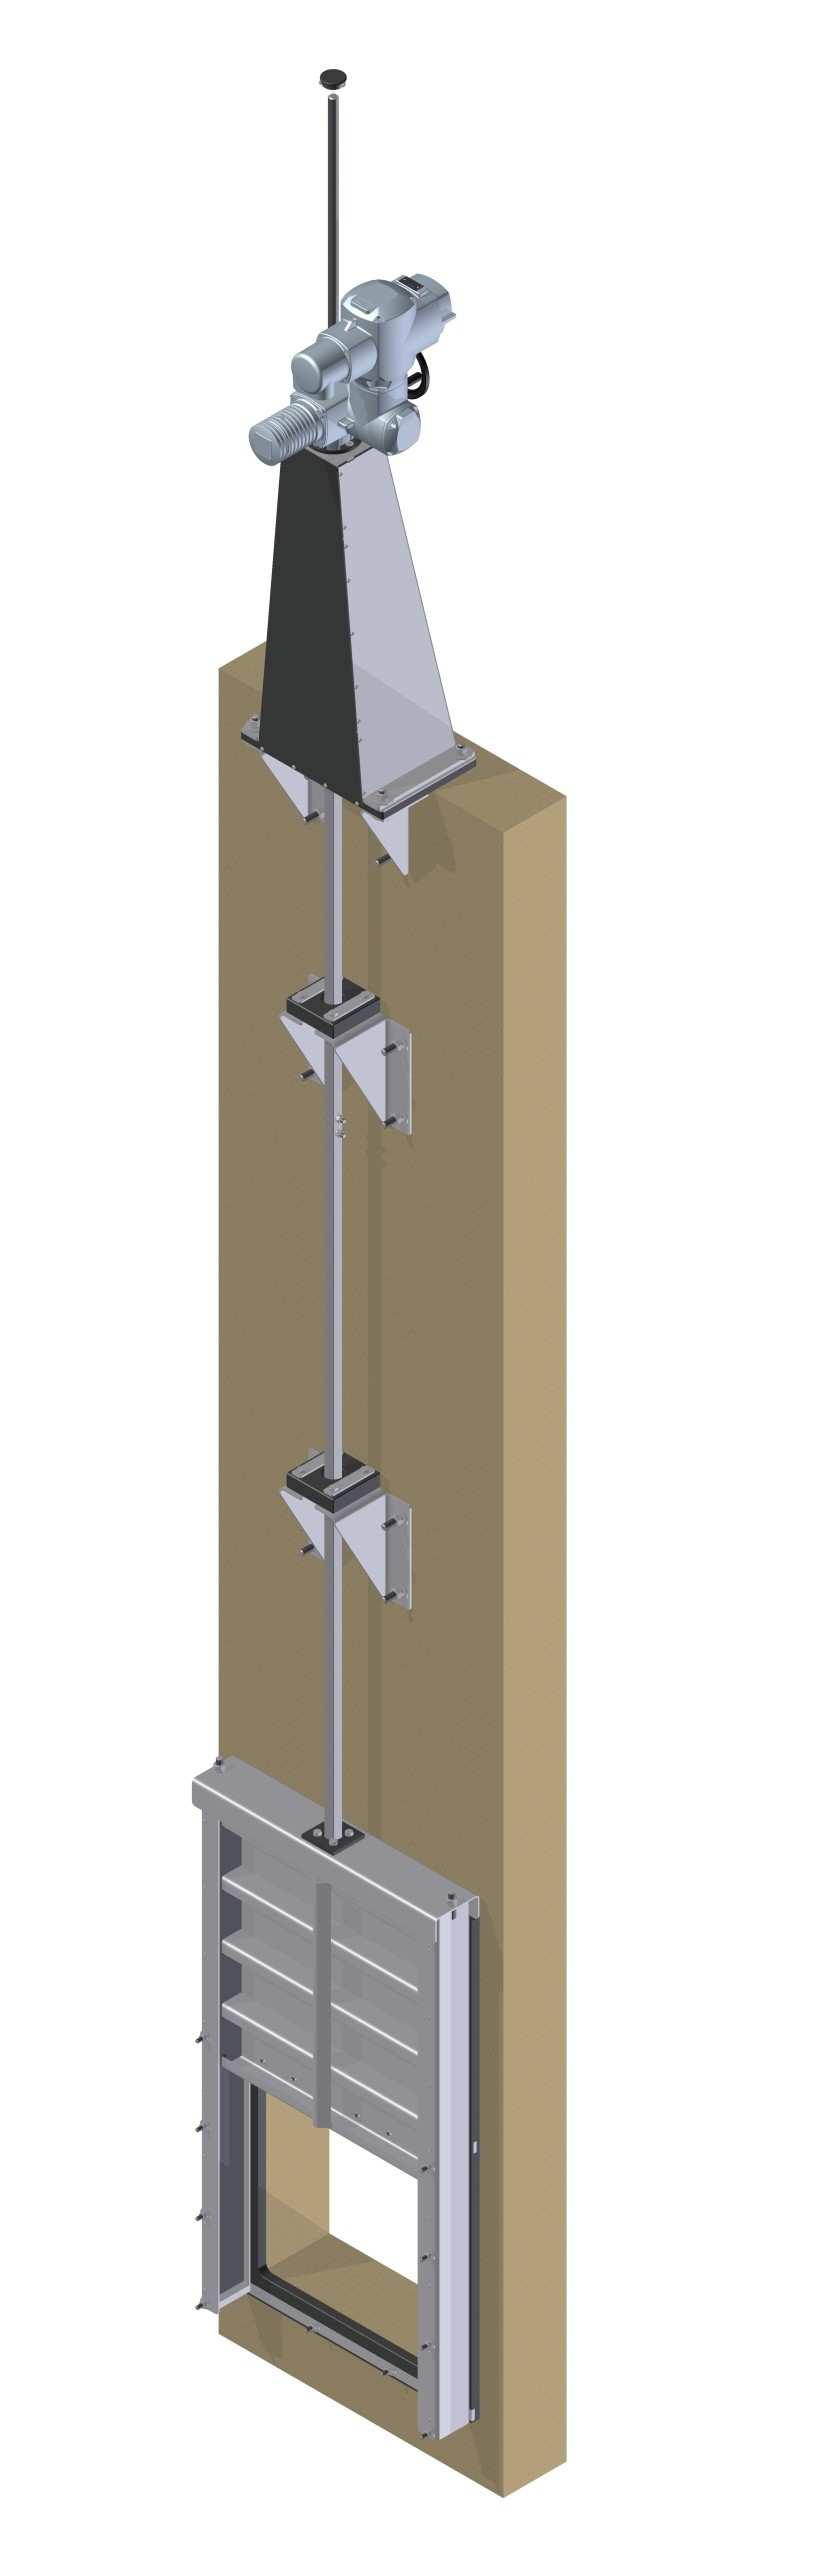 Beépítési ábra Situation drawing Aufbauzeichnung Eltérő írányú víznyomás (Külső,- és belső oldali vízzárás) KSA-MD-RVS Téglalap keresztmetszetű, emelkedő